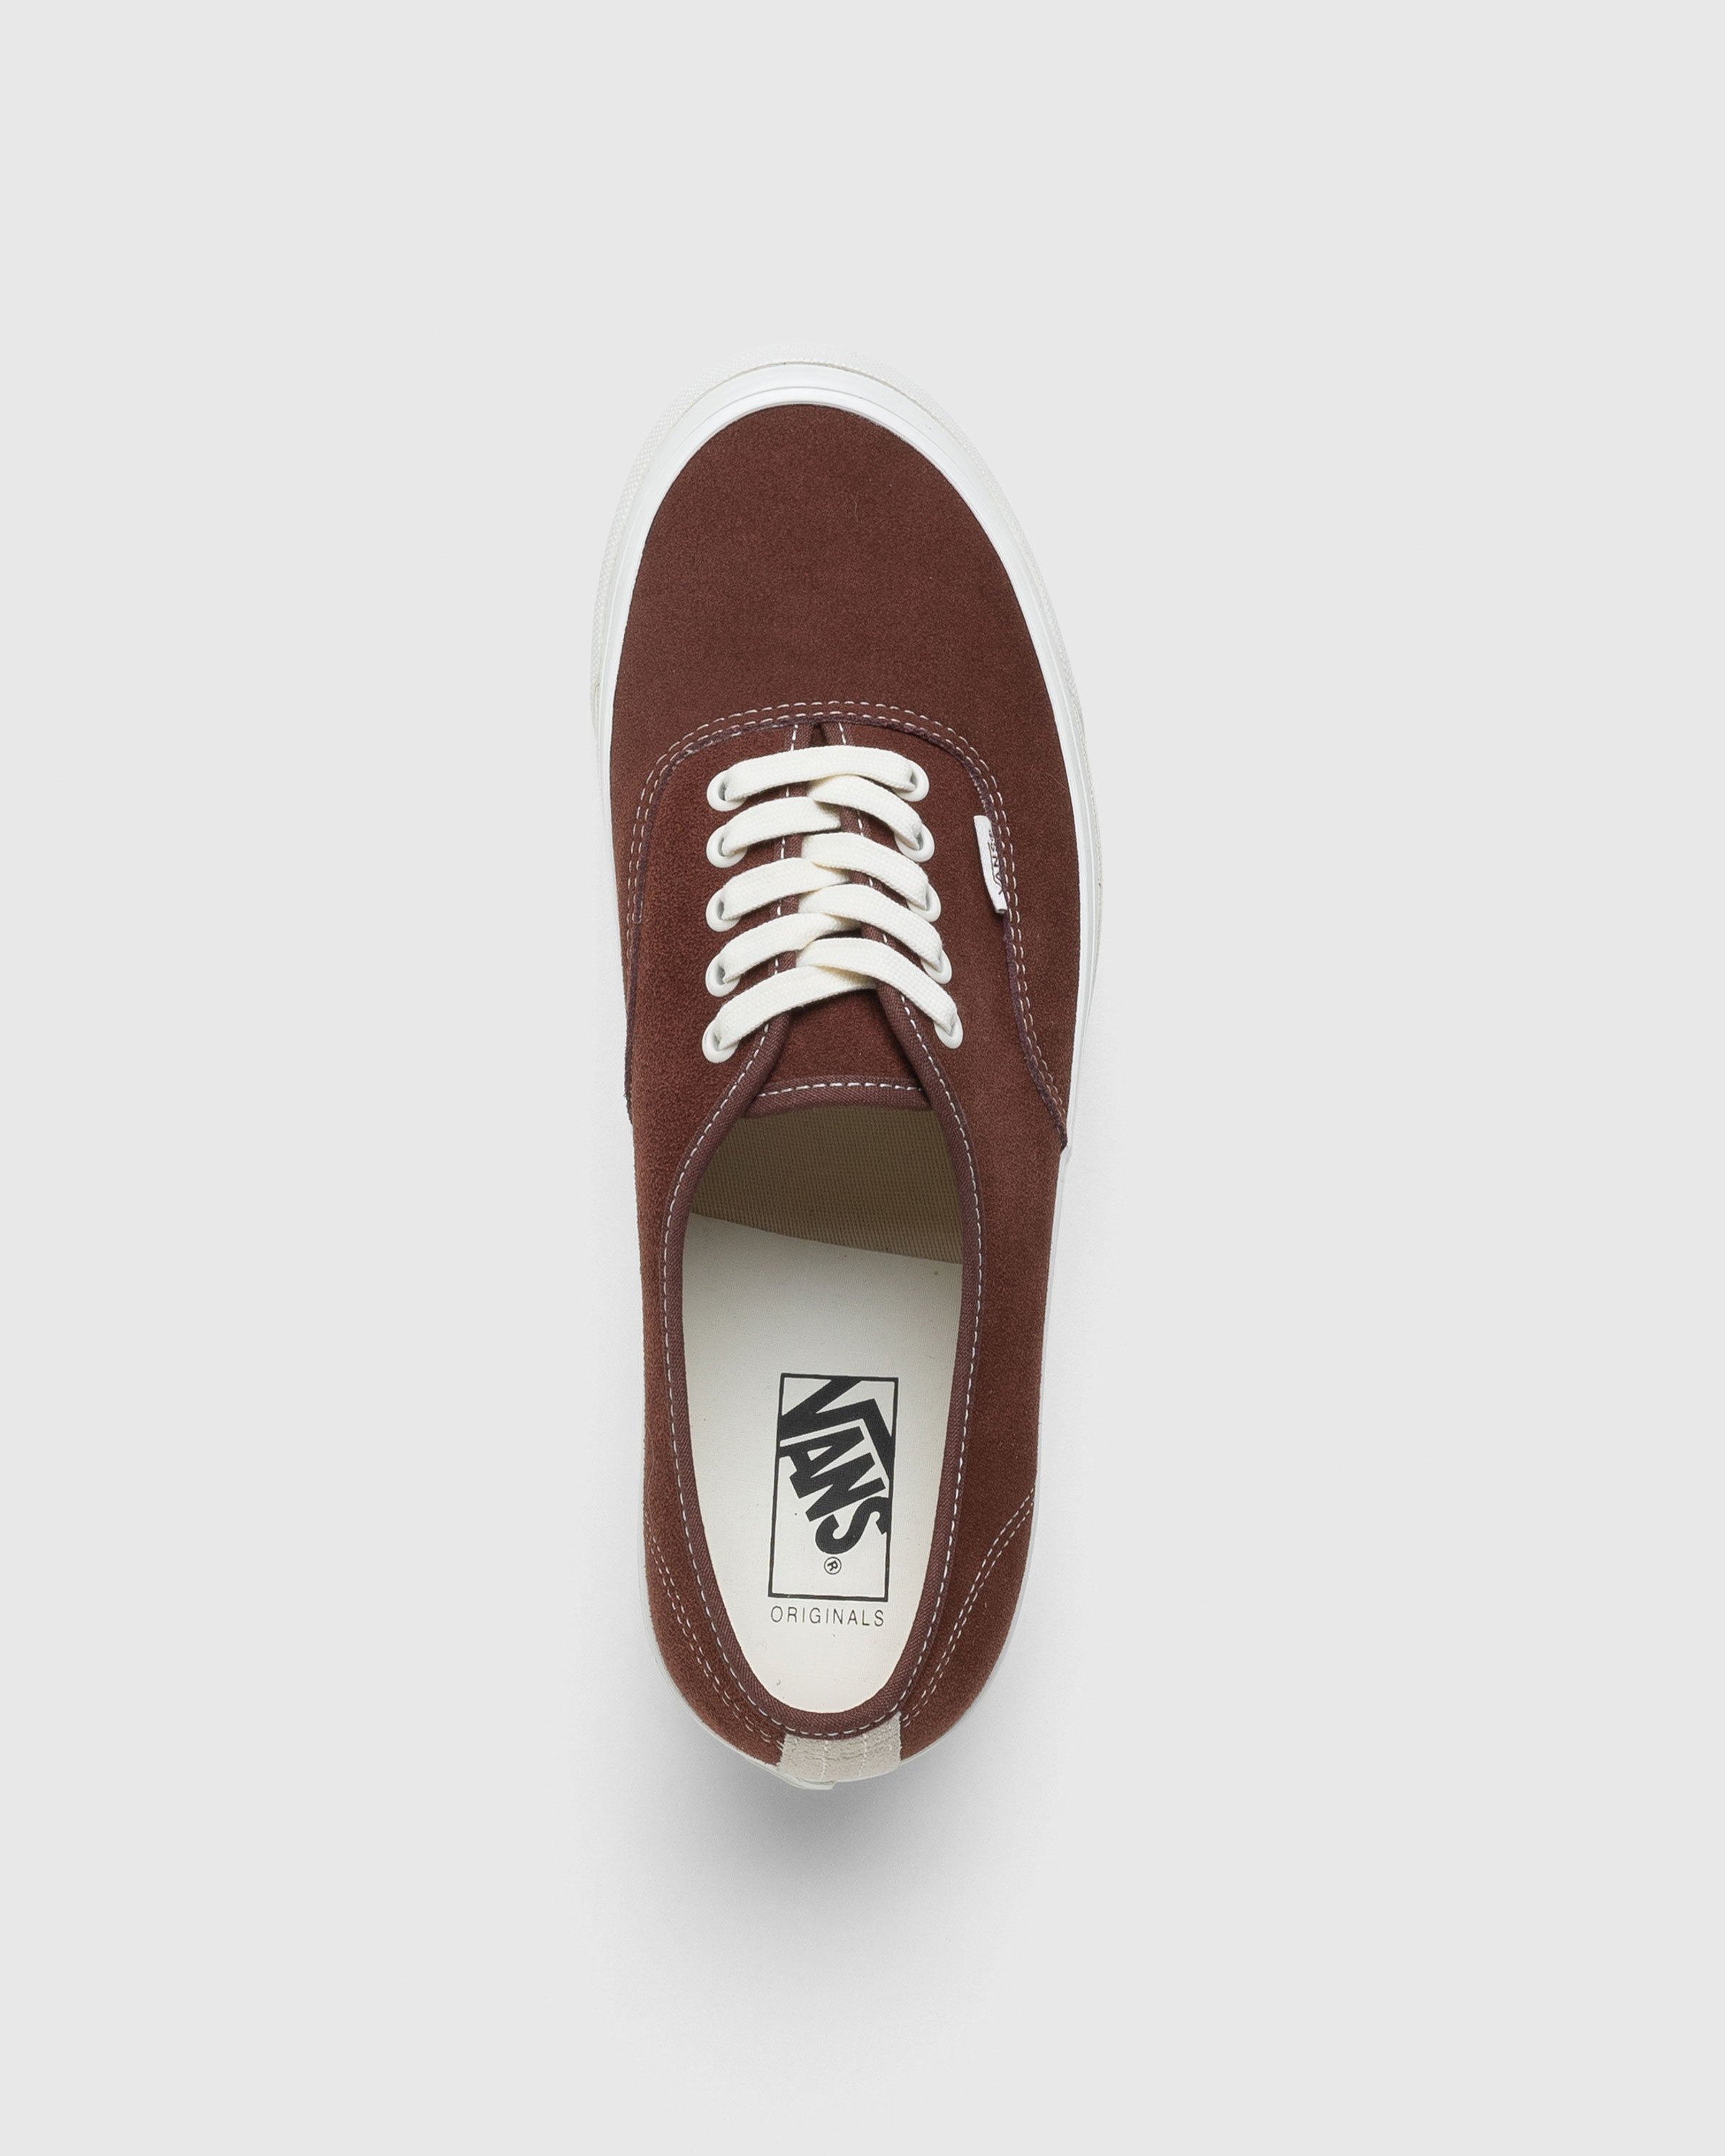 Vans – UA OG Authentic LX Suede Brown - Low Top Sneakers - Brown - Image 5